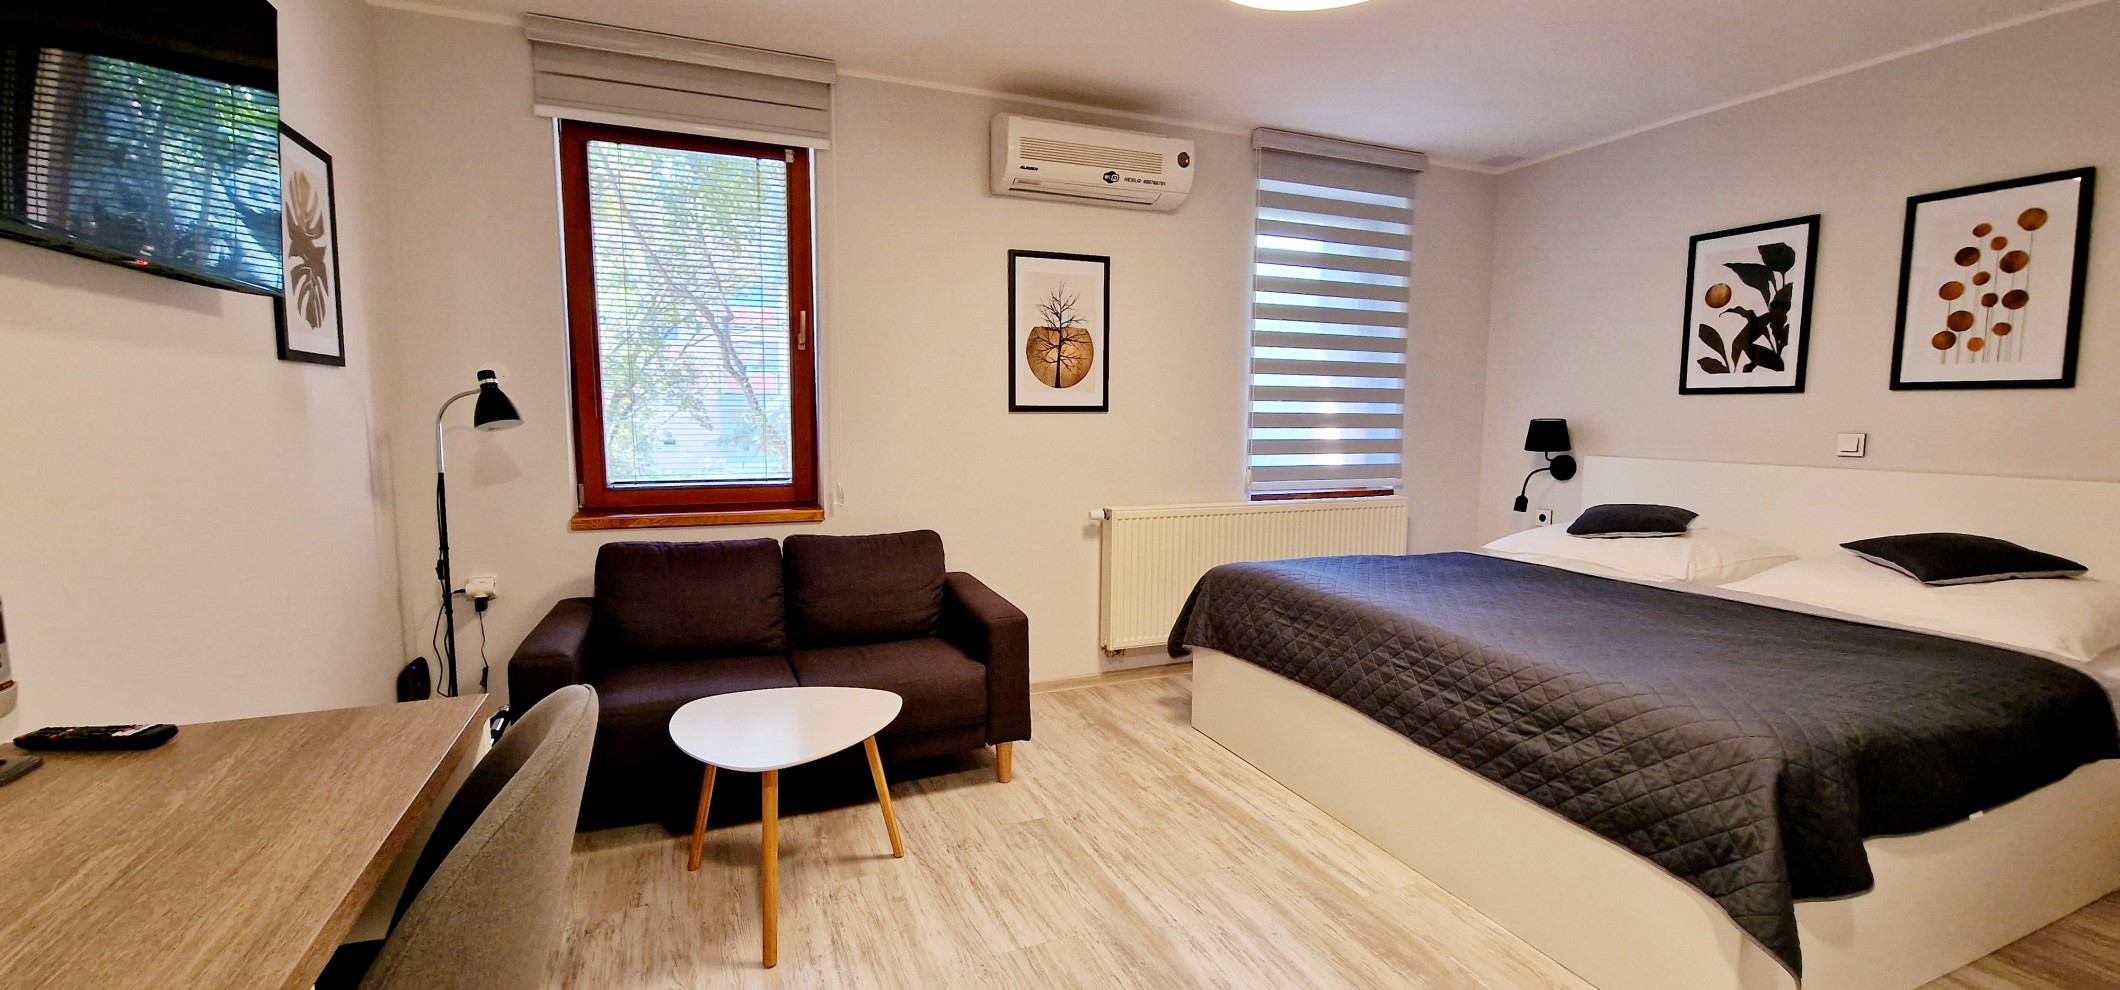 Penzion Valtice-ubytování pro rodinné dovolené, víkendové pobyty pro dva